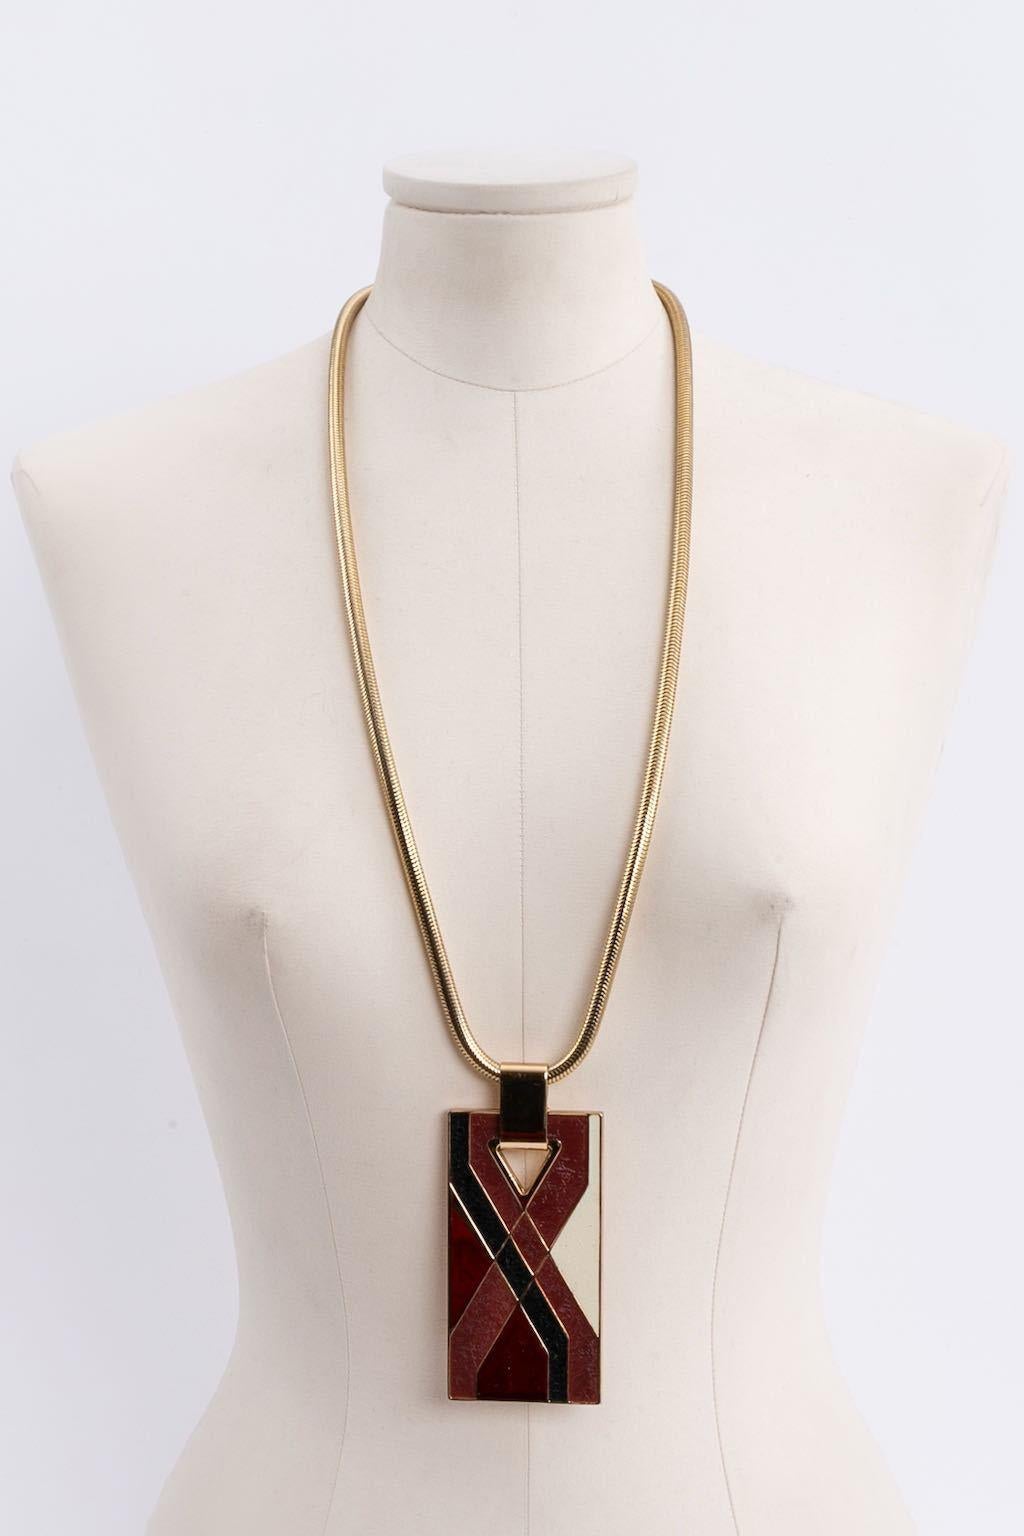 Lanvin - Halskette aus vergoldetem Metall mit einem Anhänger.

Zusätzliche Informationen: 
Abmessungen: Länge: 78 cm (30.7